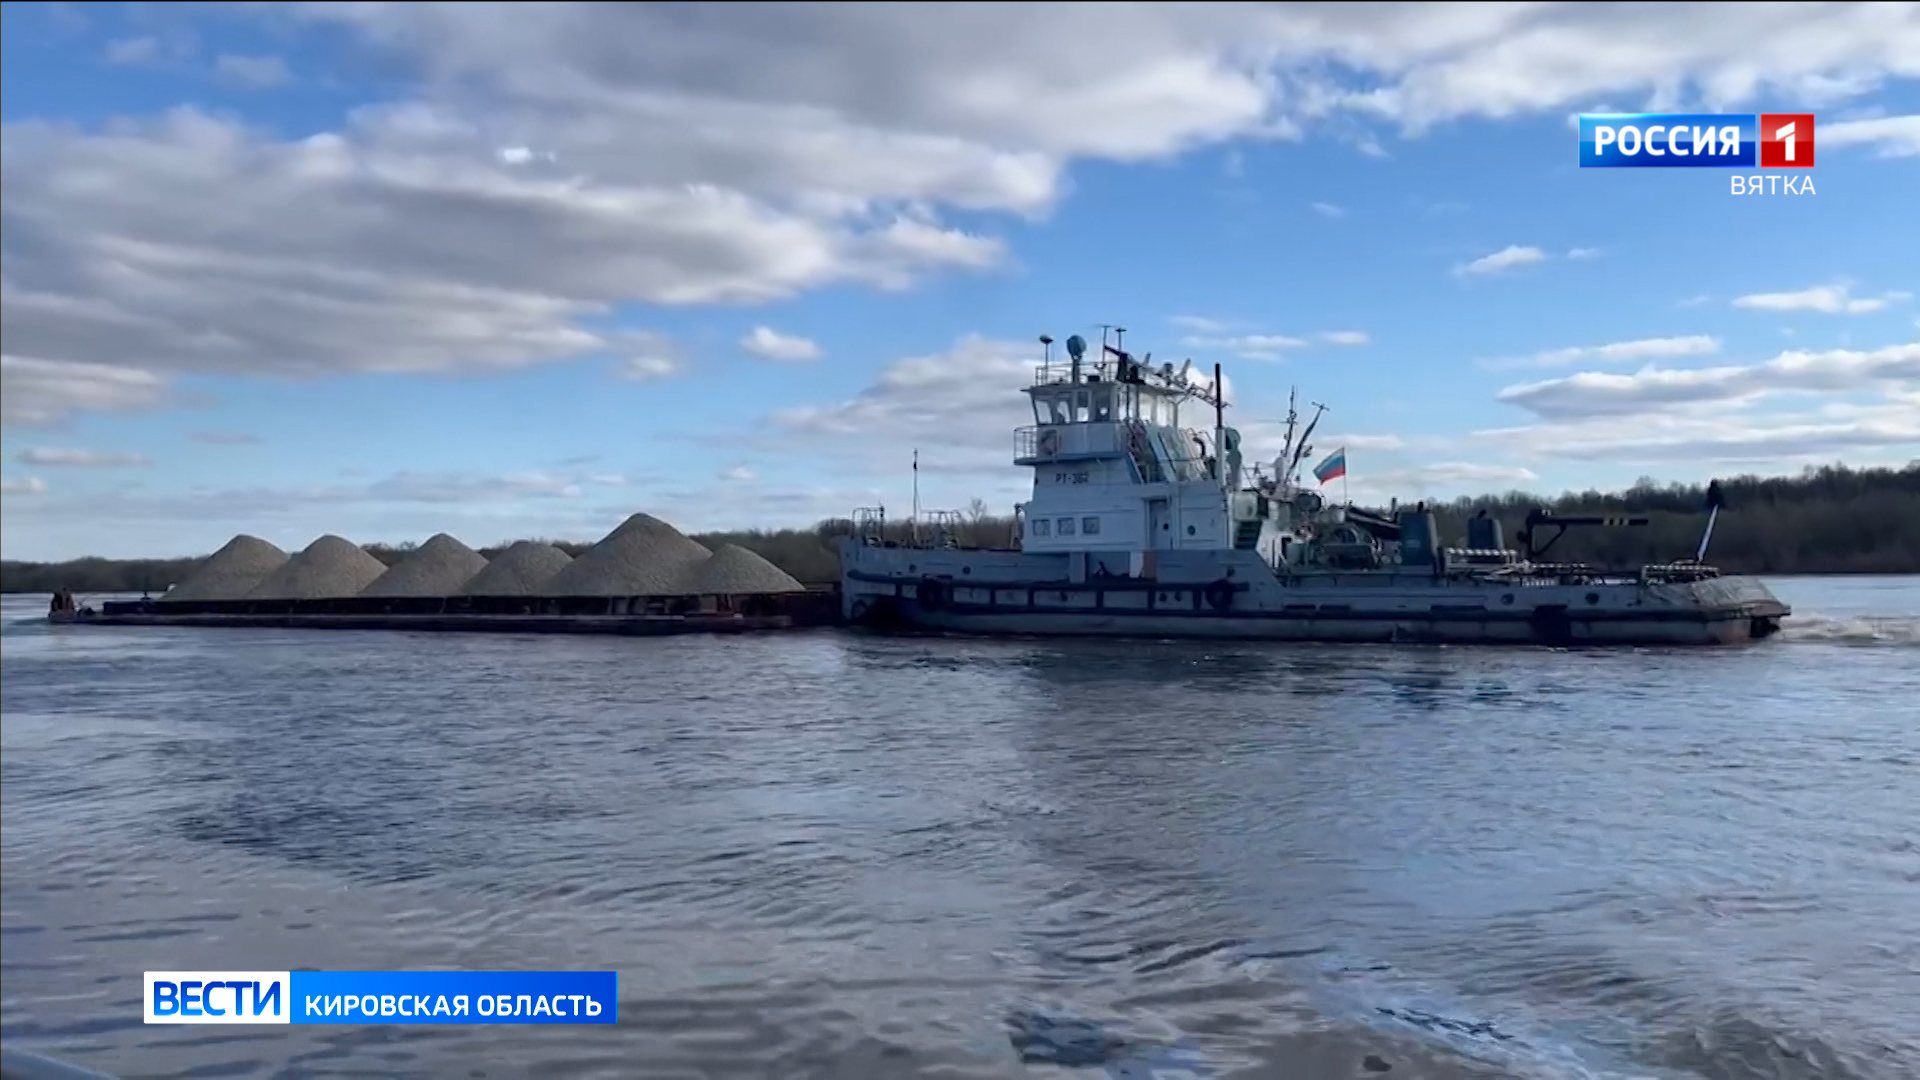 В Киров пришла первая за последние 30 лет баржа с промышленным грузом